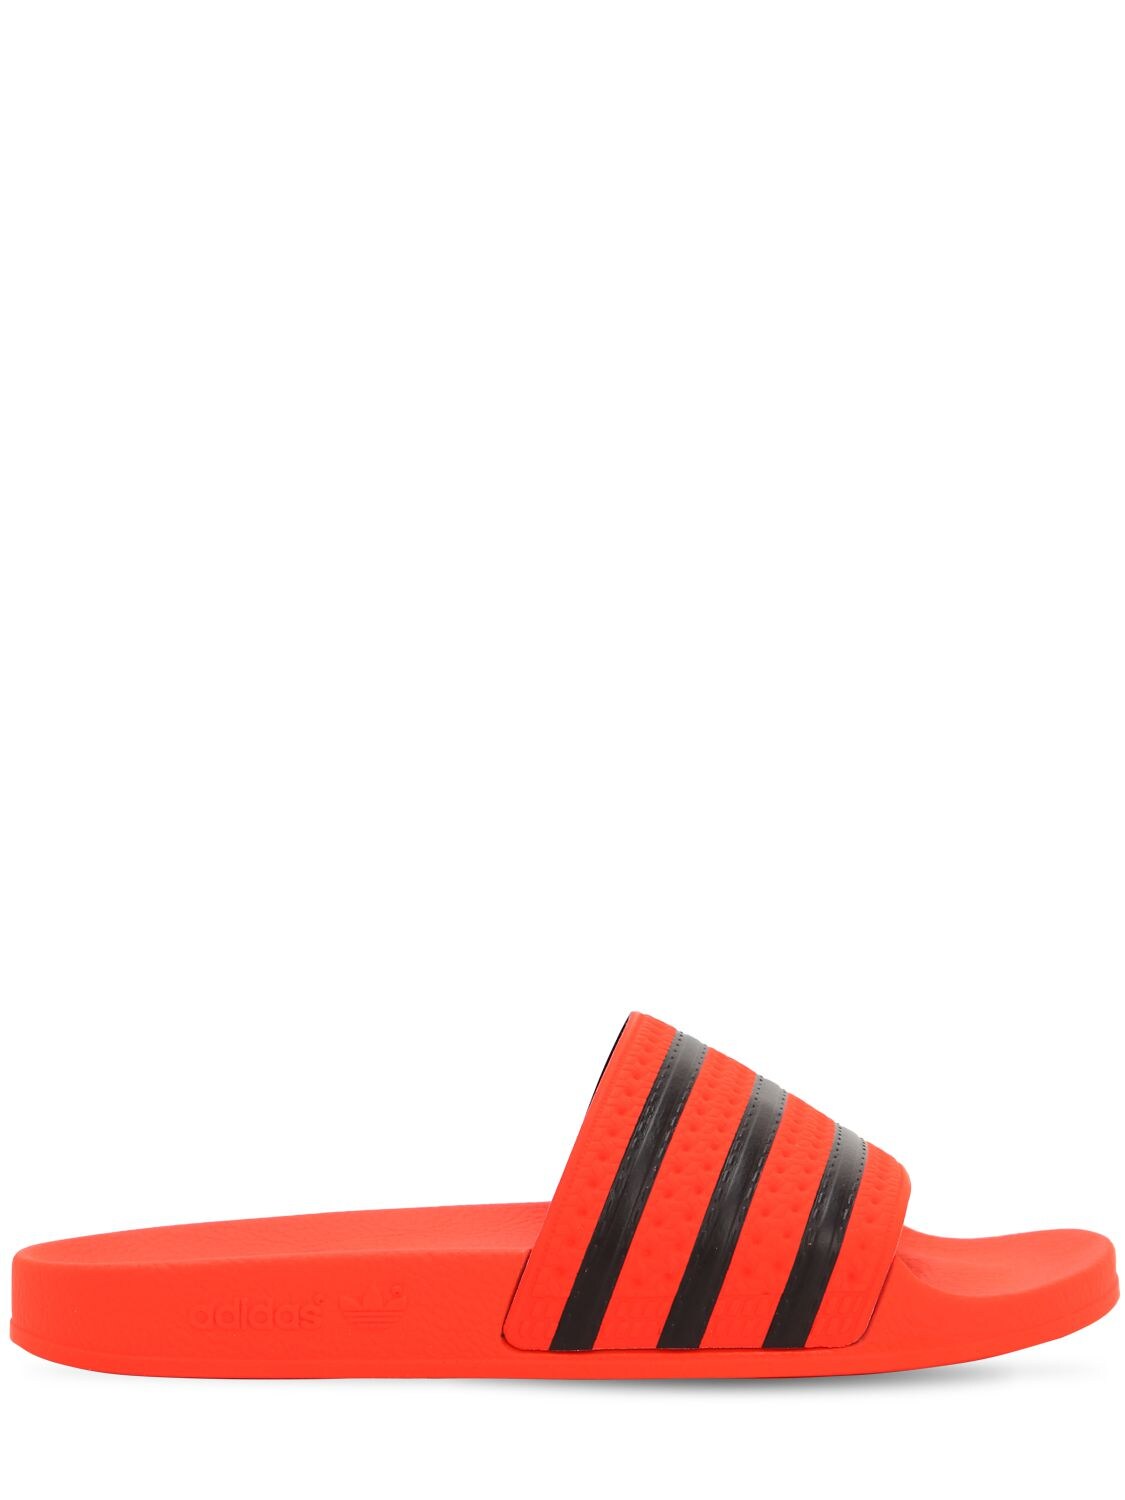 Adidas Originals "adilette"橡胶凉拖 In Red